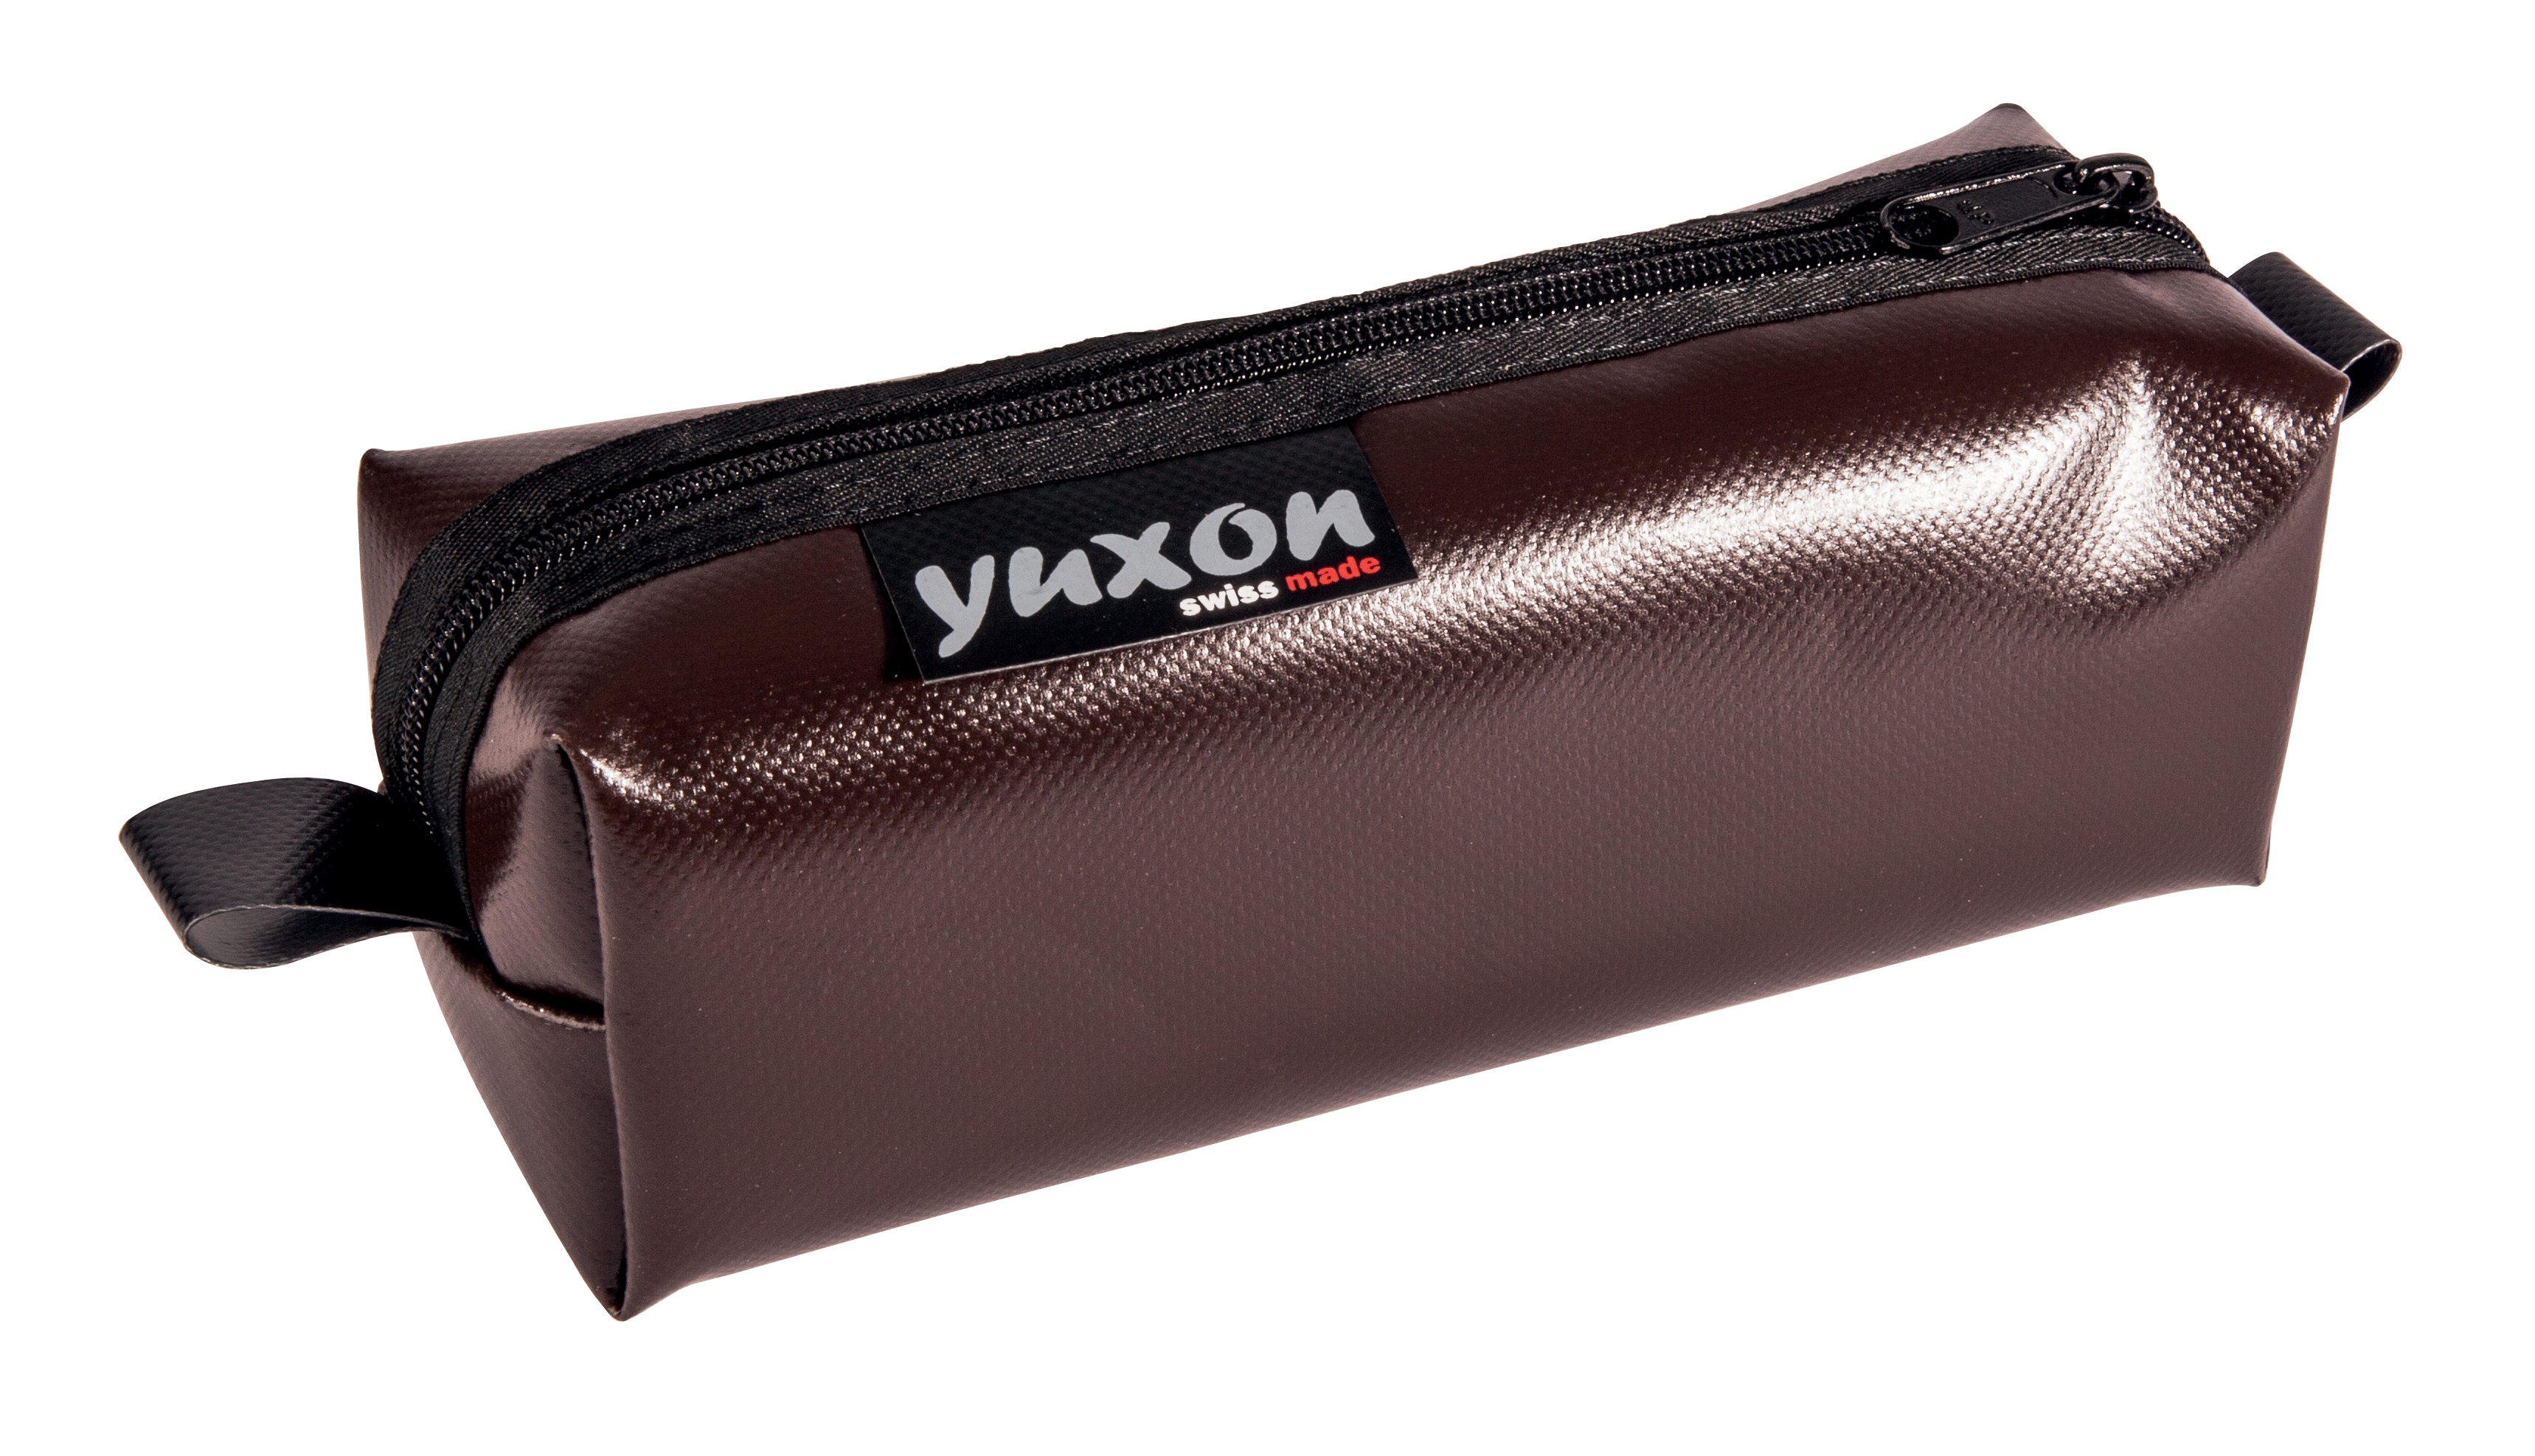 YUXON Trousse Maxi 8900.16 brun